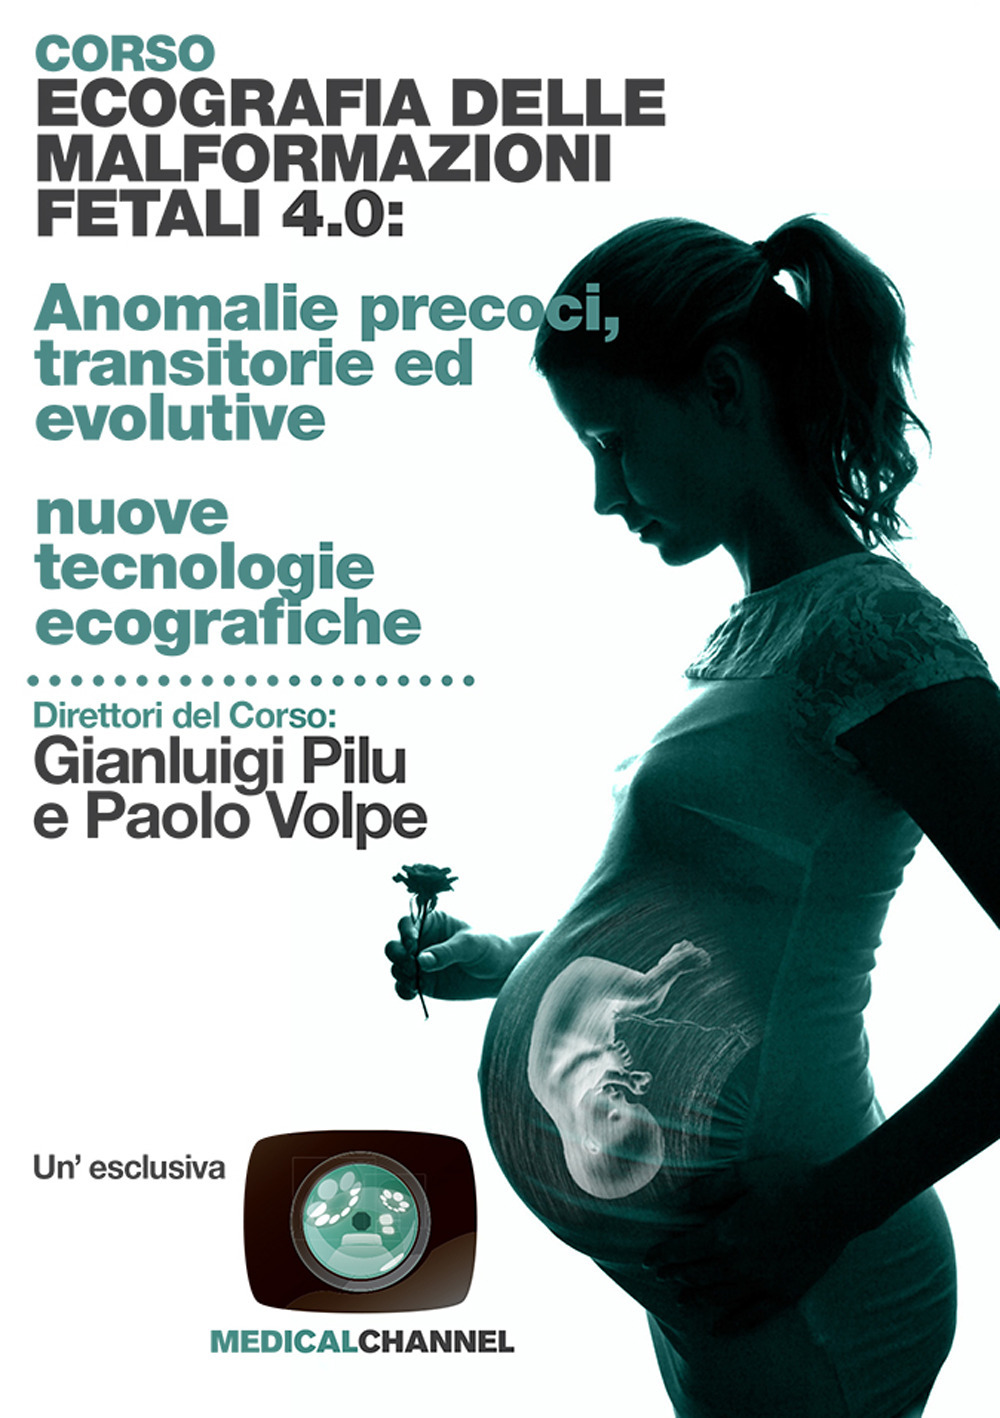 Corso ecografia delle malformazioni fetali 4.0: anomalie precoci, transitorie ed evolutive nuove tecnologie ecografiche